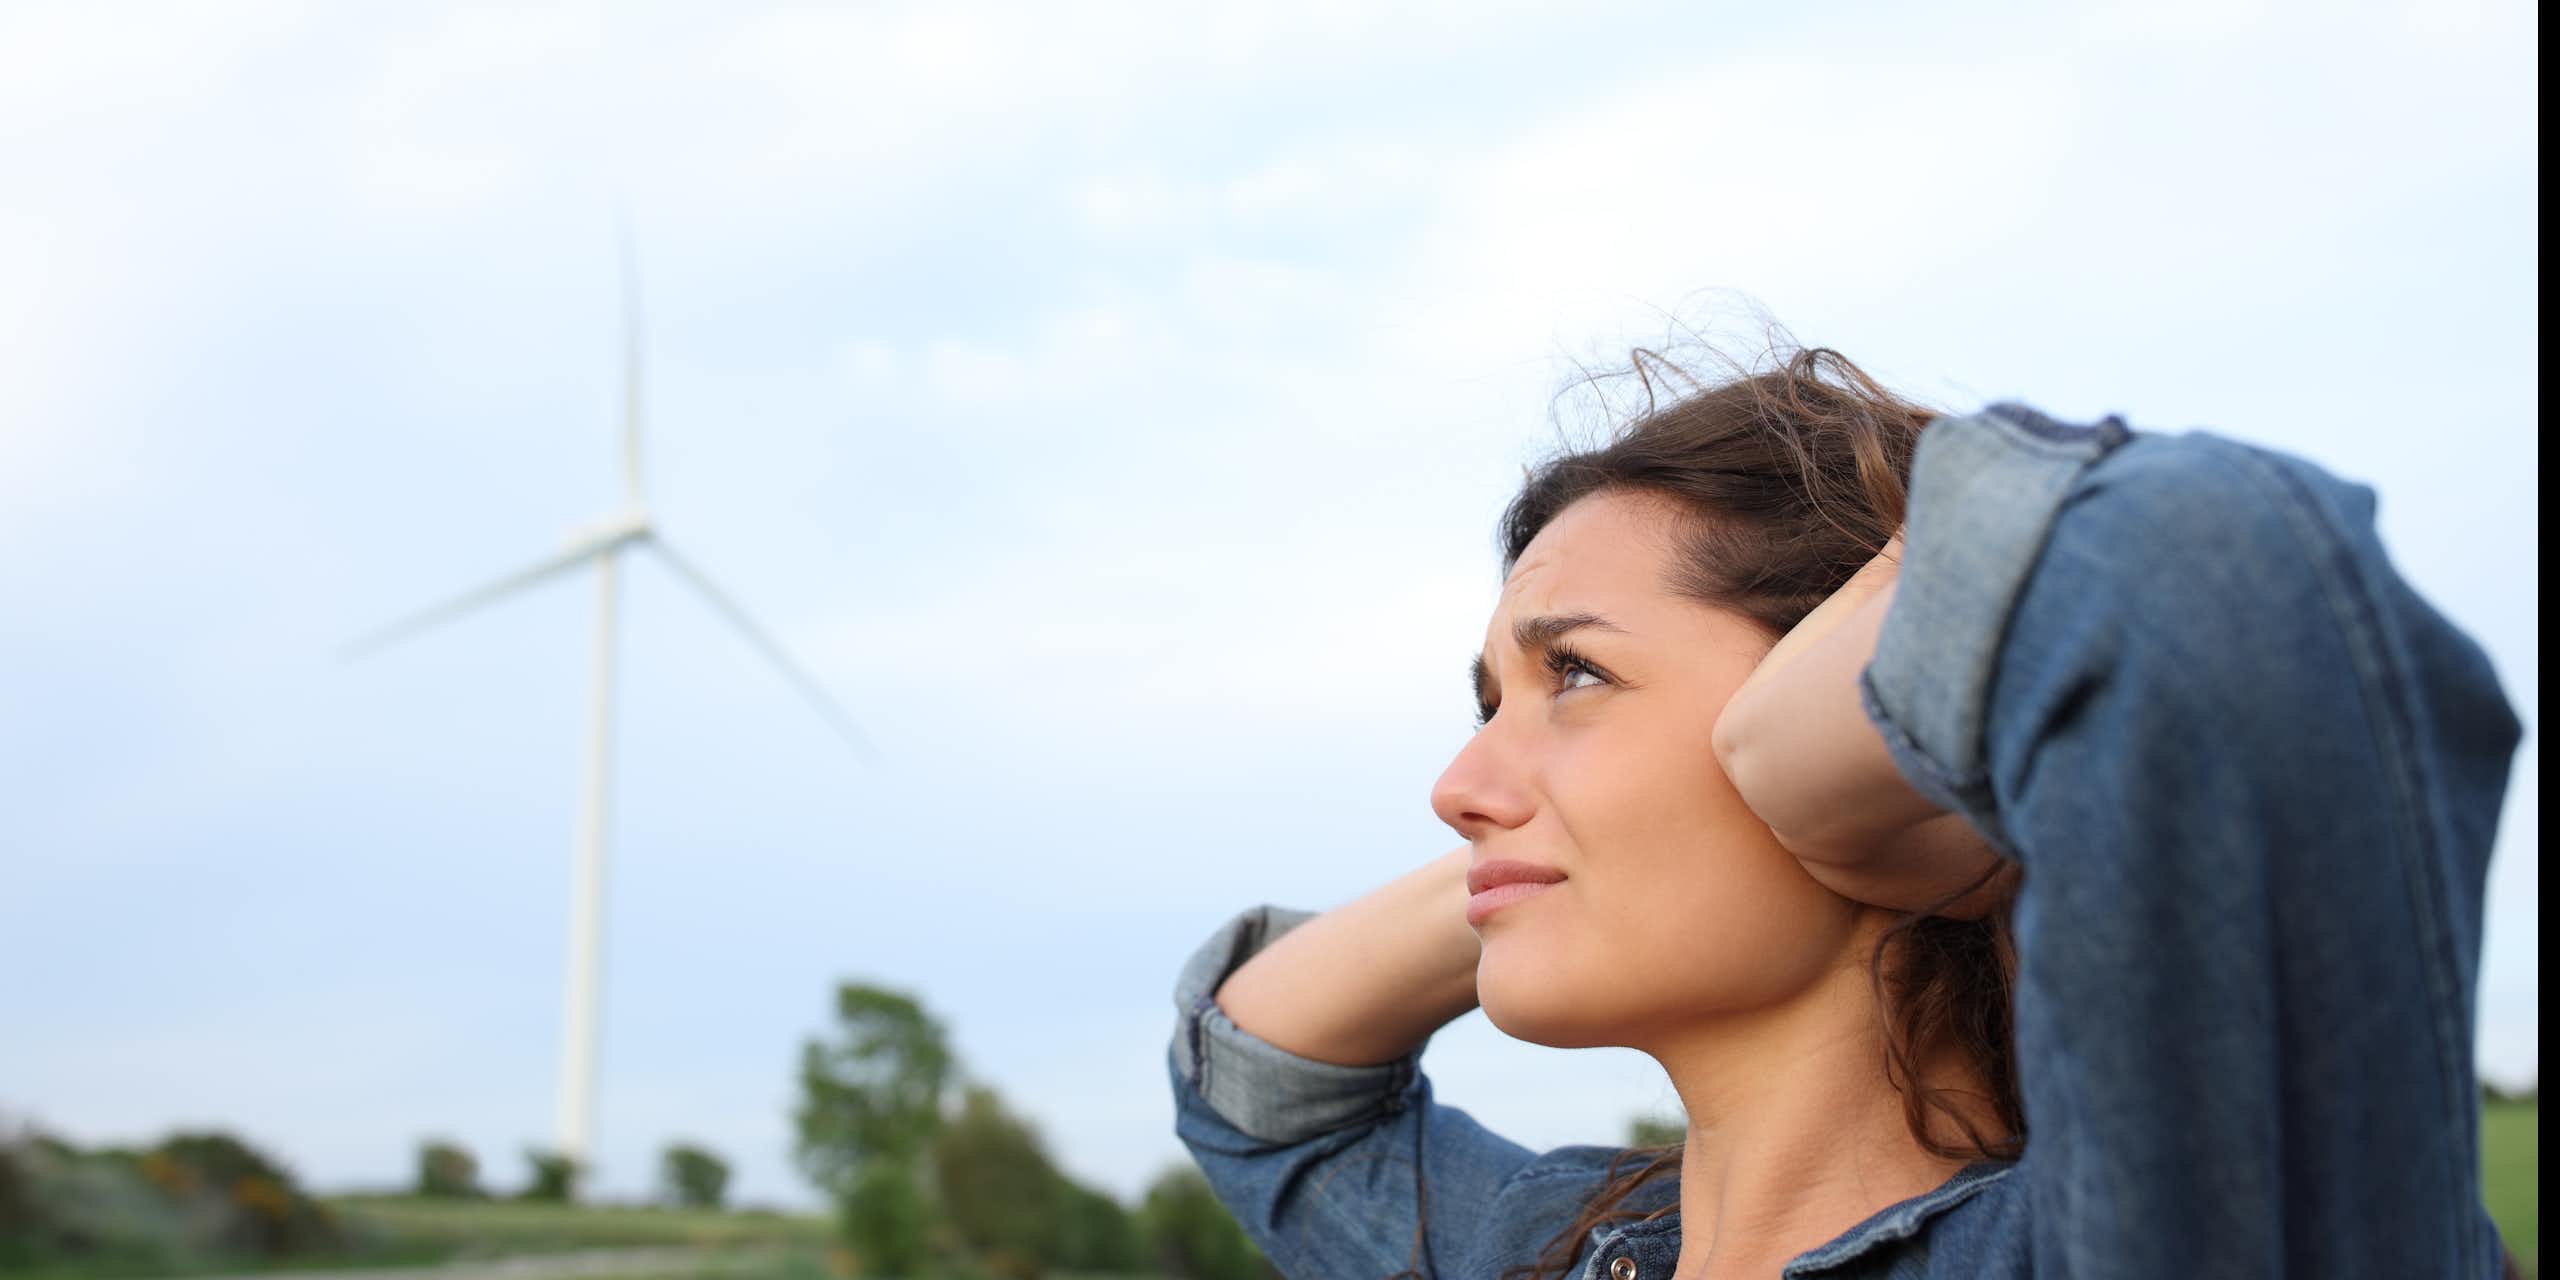 Femme se couvrant les oreilles à proximité d'une éolienne